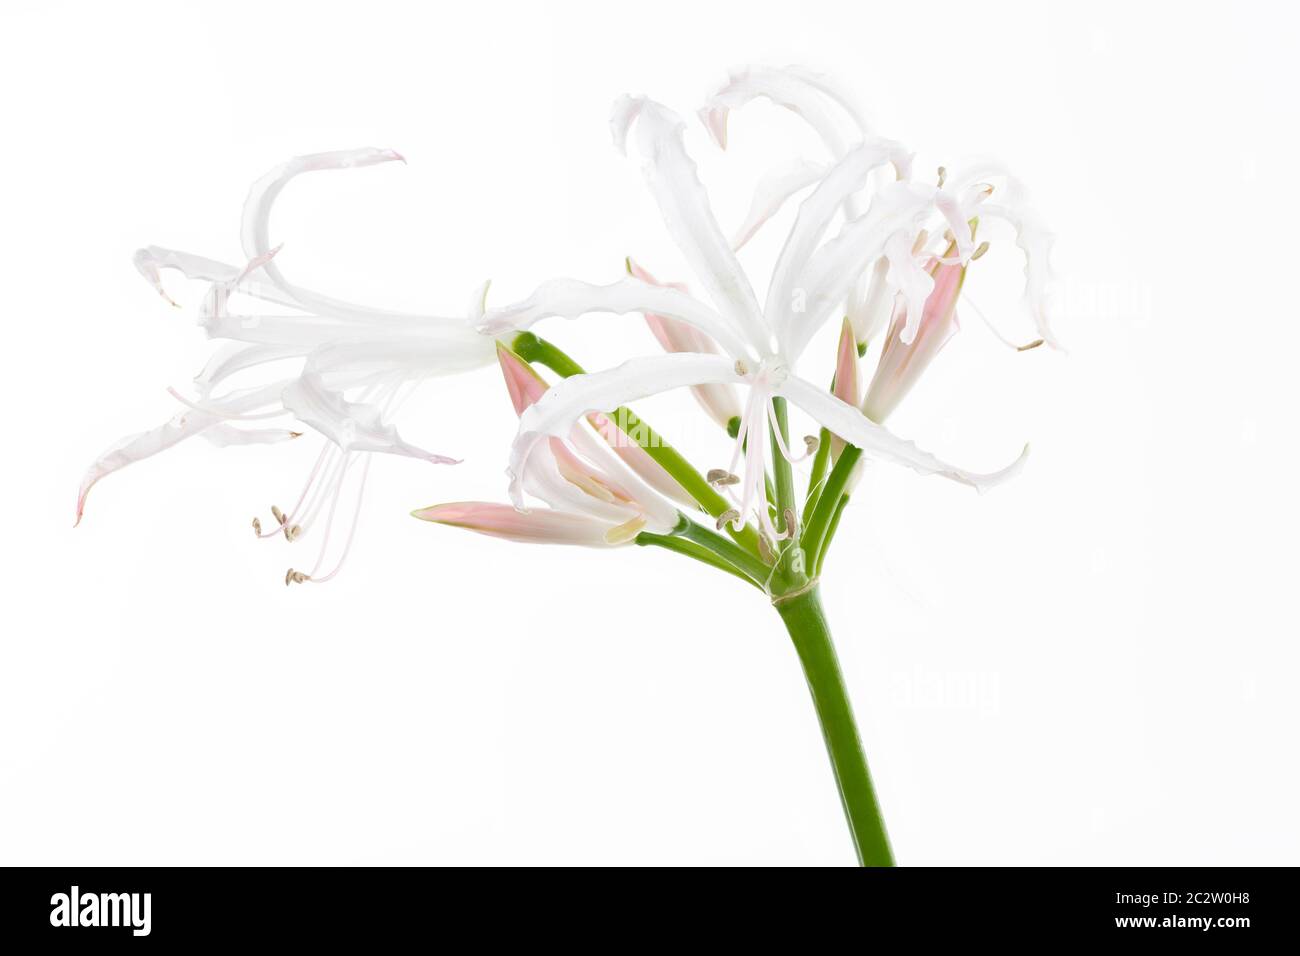 Hymenocallis flower isolated on white background Stock Photo